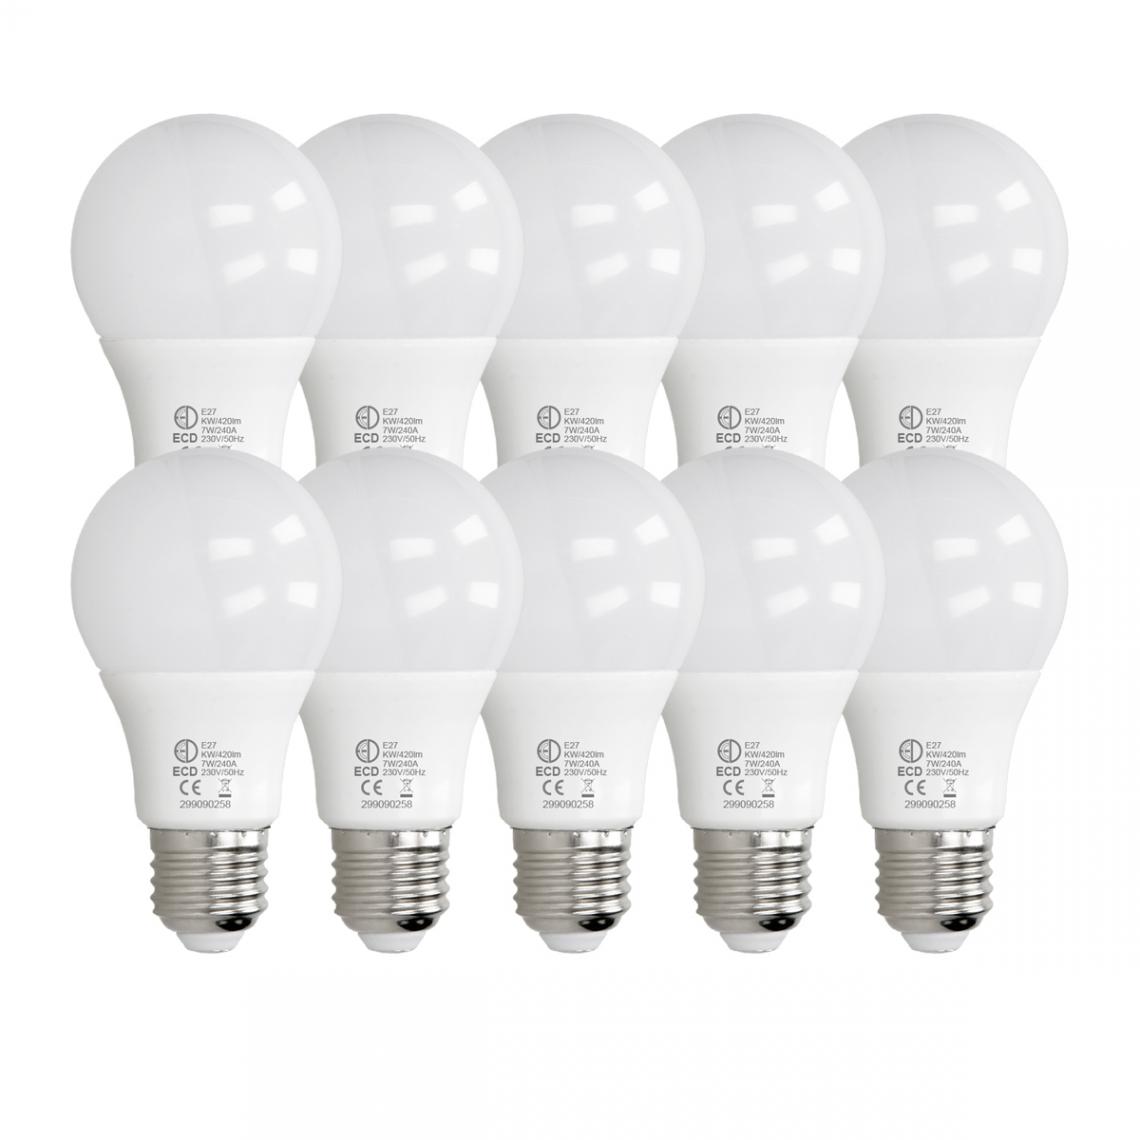 Ecd Germany - ECD Germany 10 pièces 7W E27 ampoule LED | 6000 Kelvin | Angle de faisceau 270 ° | 420 lumens | Blanc froid | 220-240 v | EEK A + | Ampoule d'éclairage - Ampoules LED